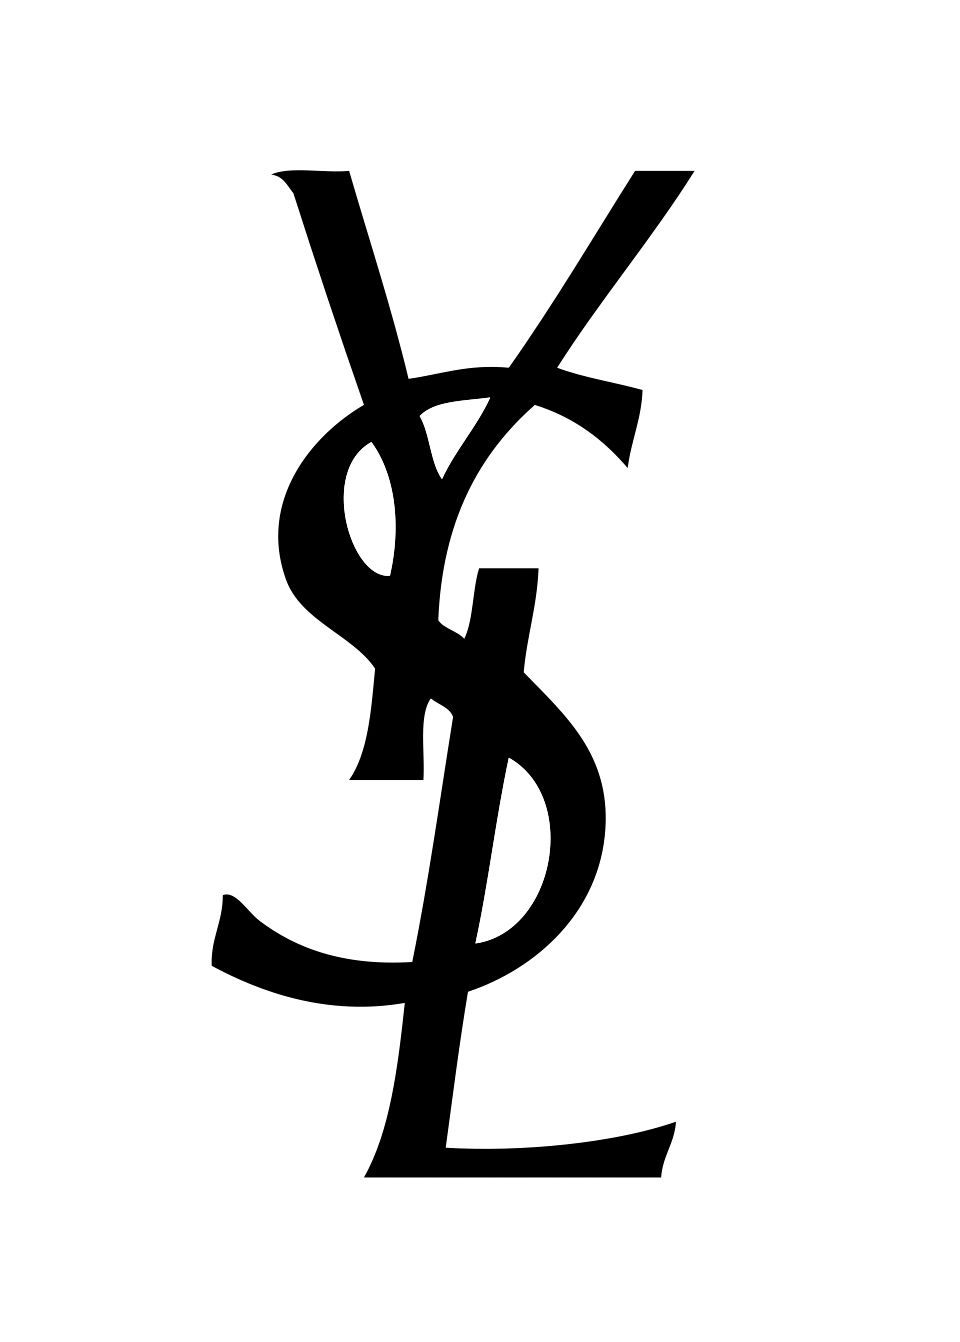 Yves Saint Laurent Brand Logo